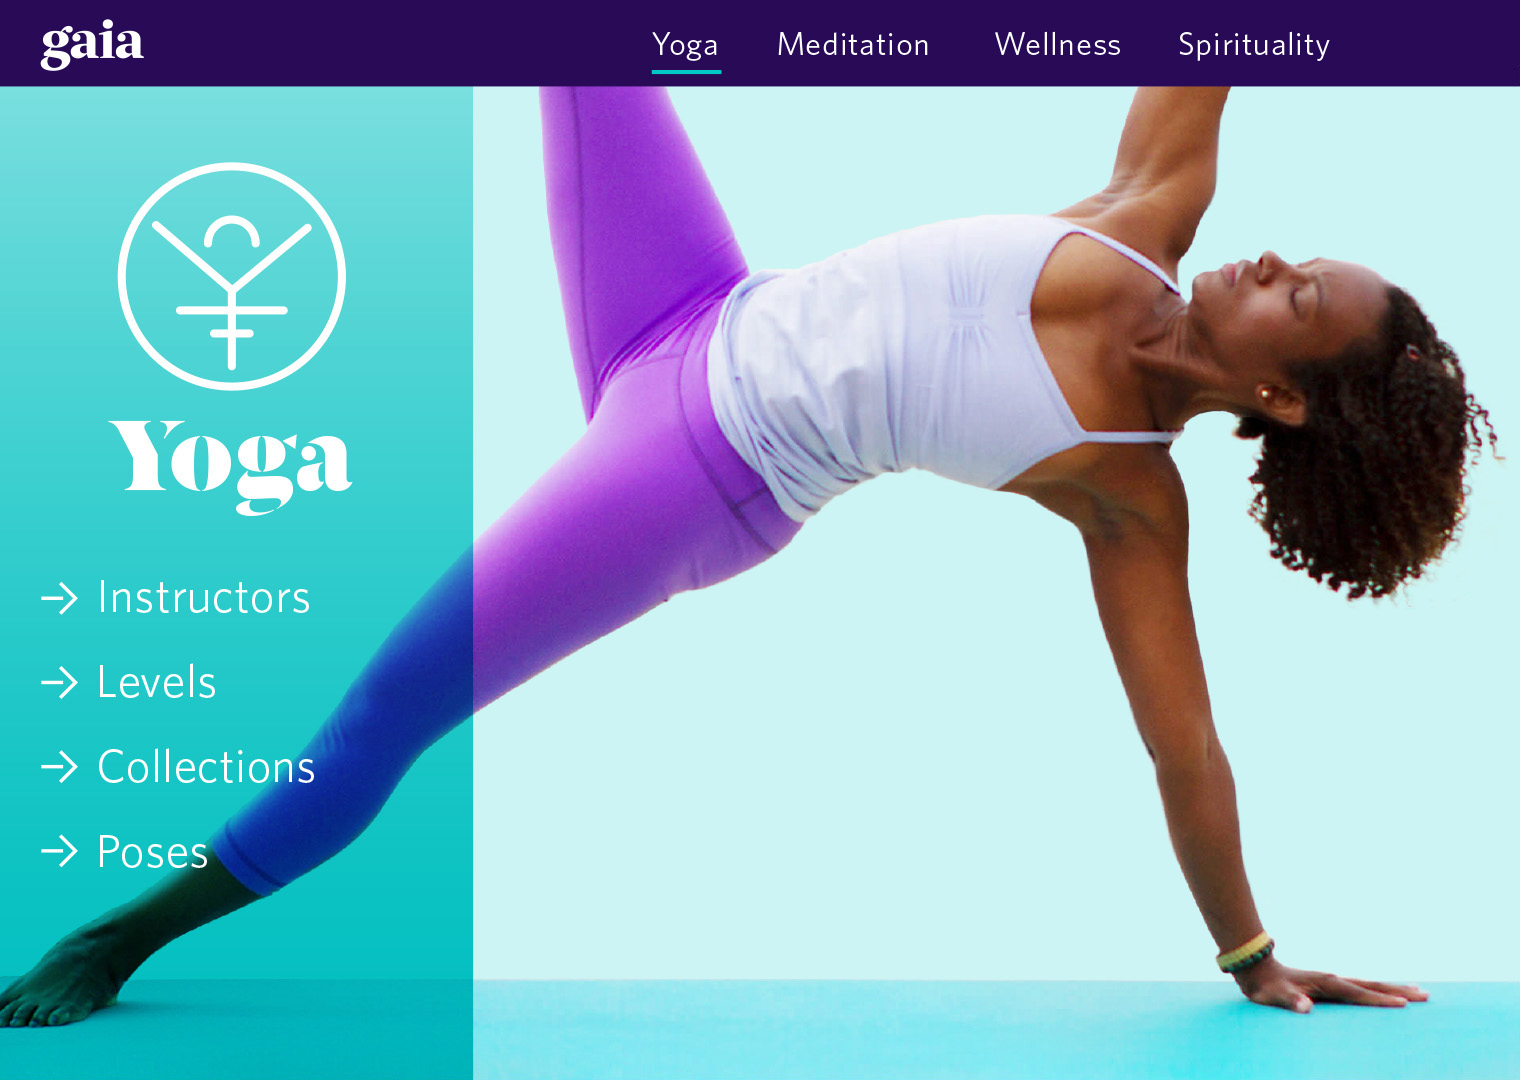 Gaia website yoga